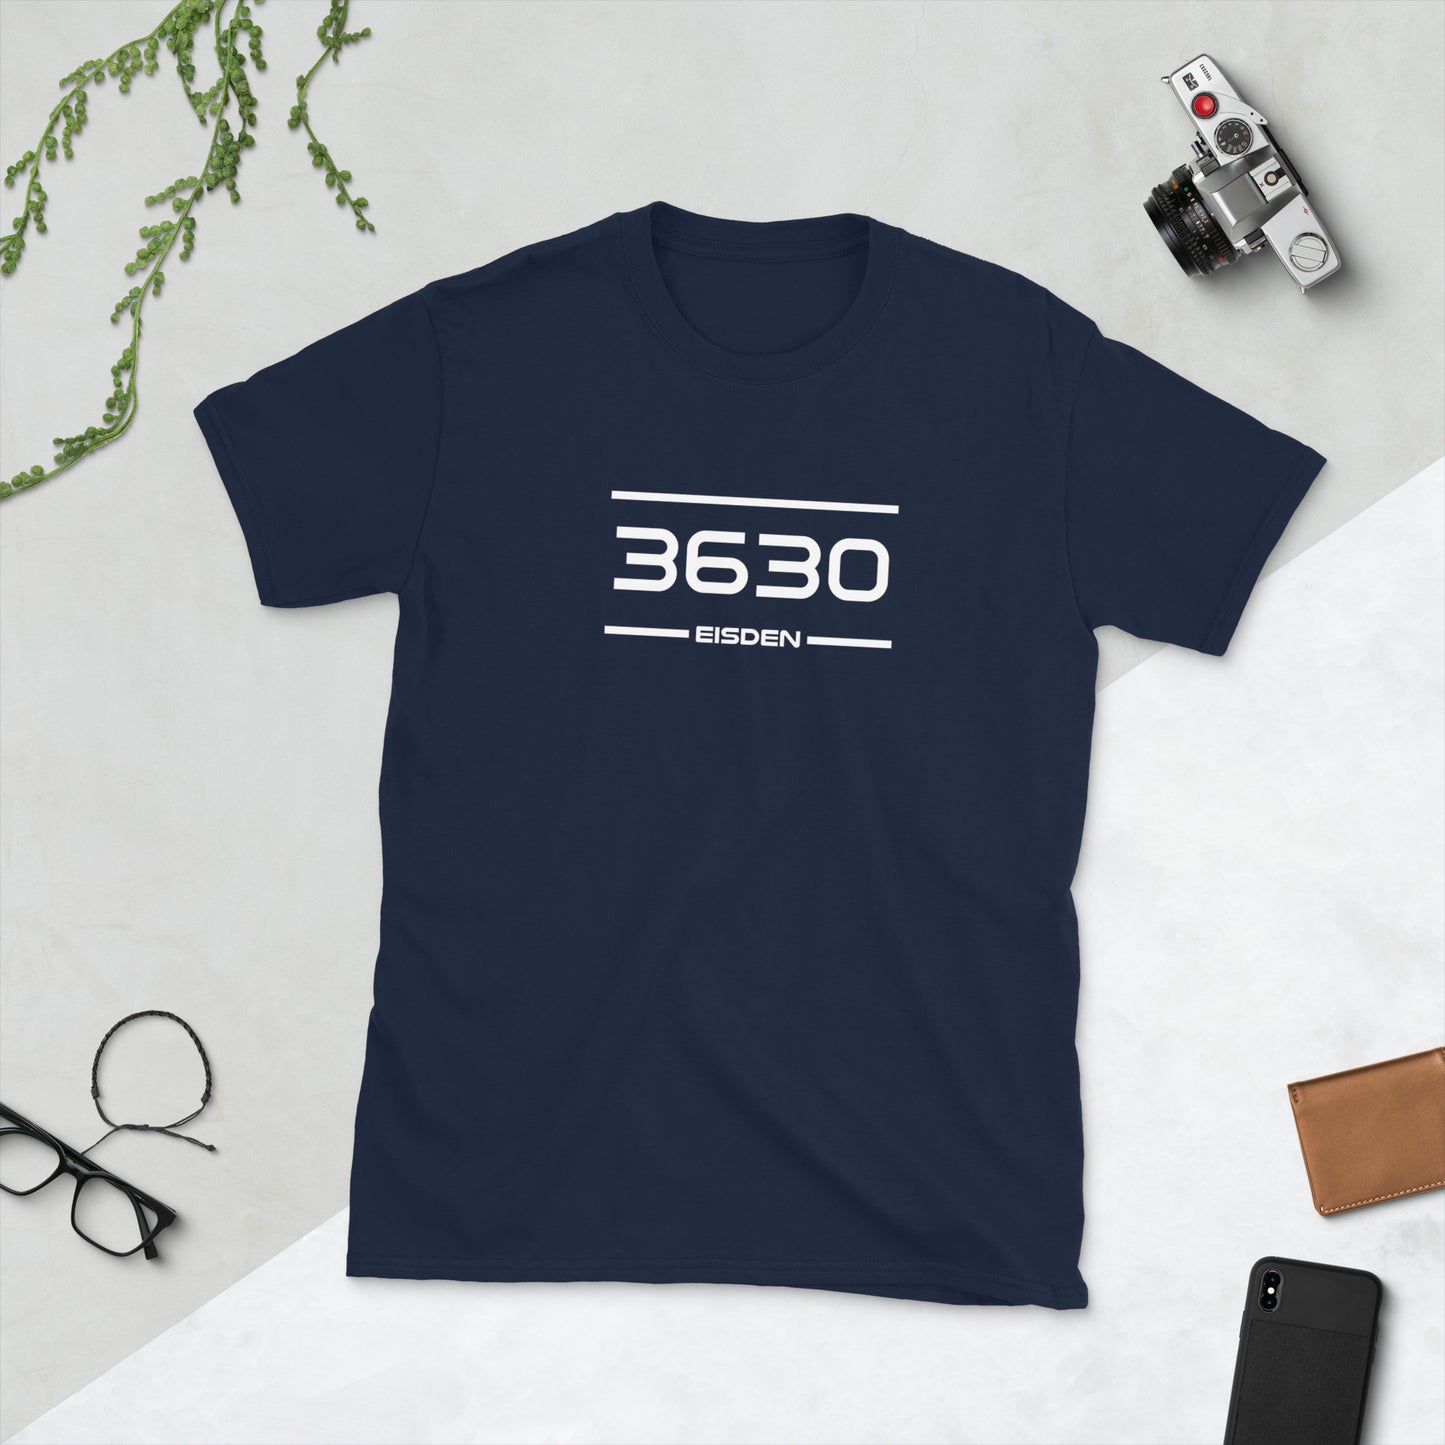 Tshirt - 3630 - Eisden